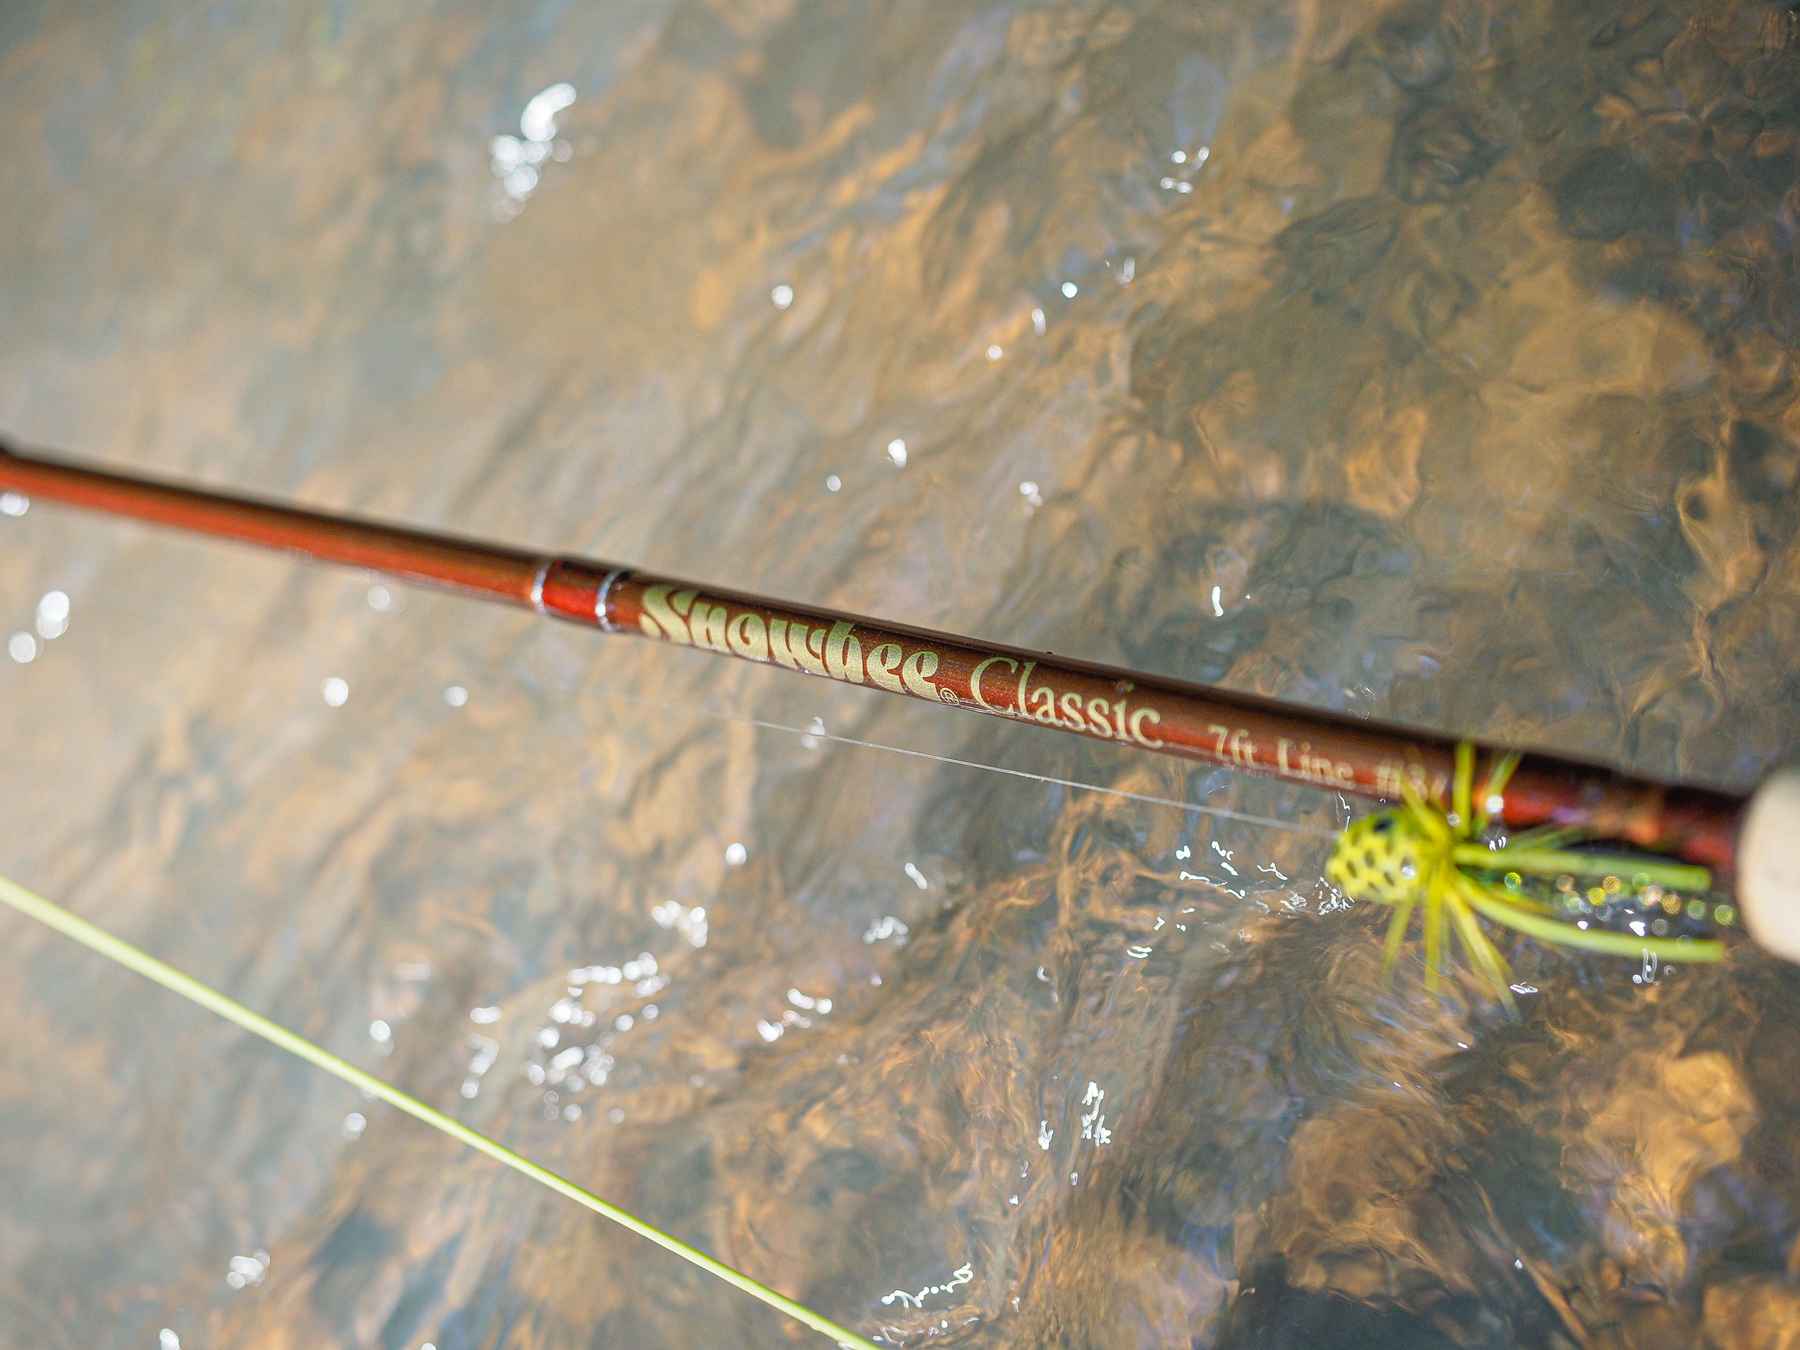 Redington Butter Stick 8' #5 4 Piece Fly Rod